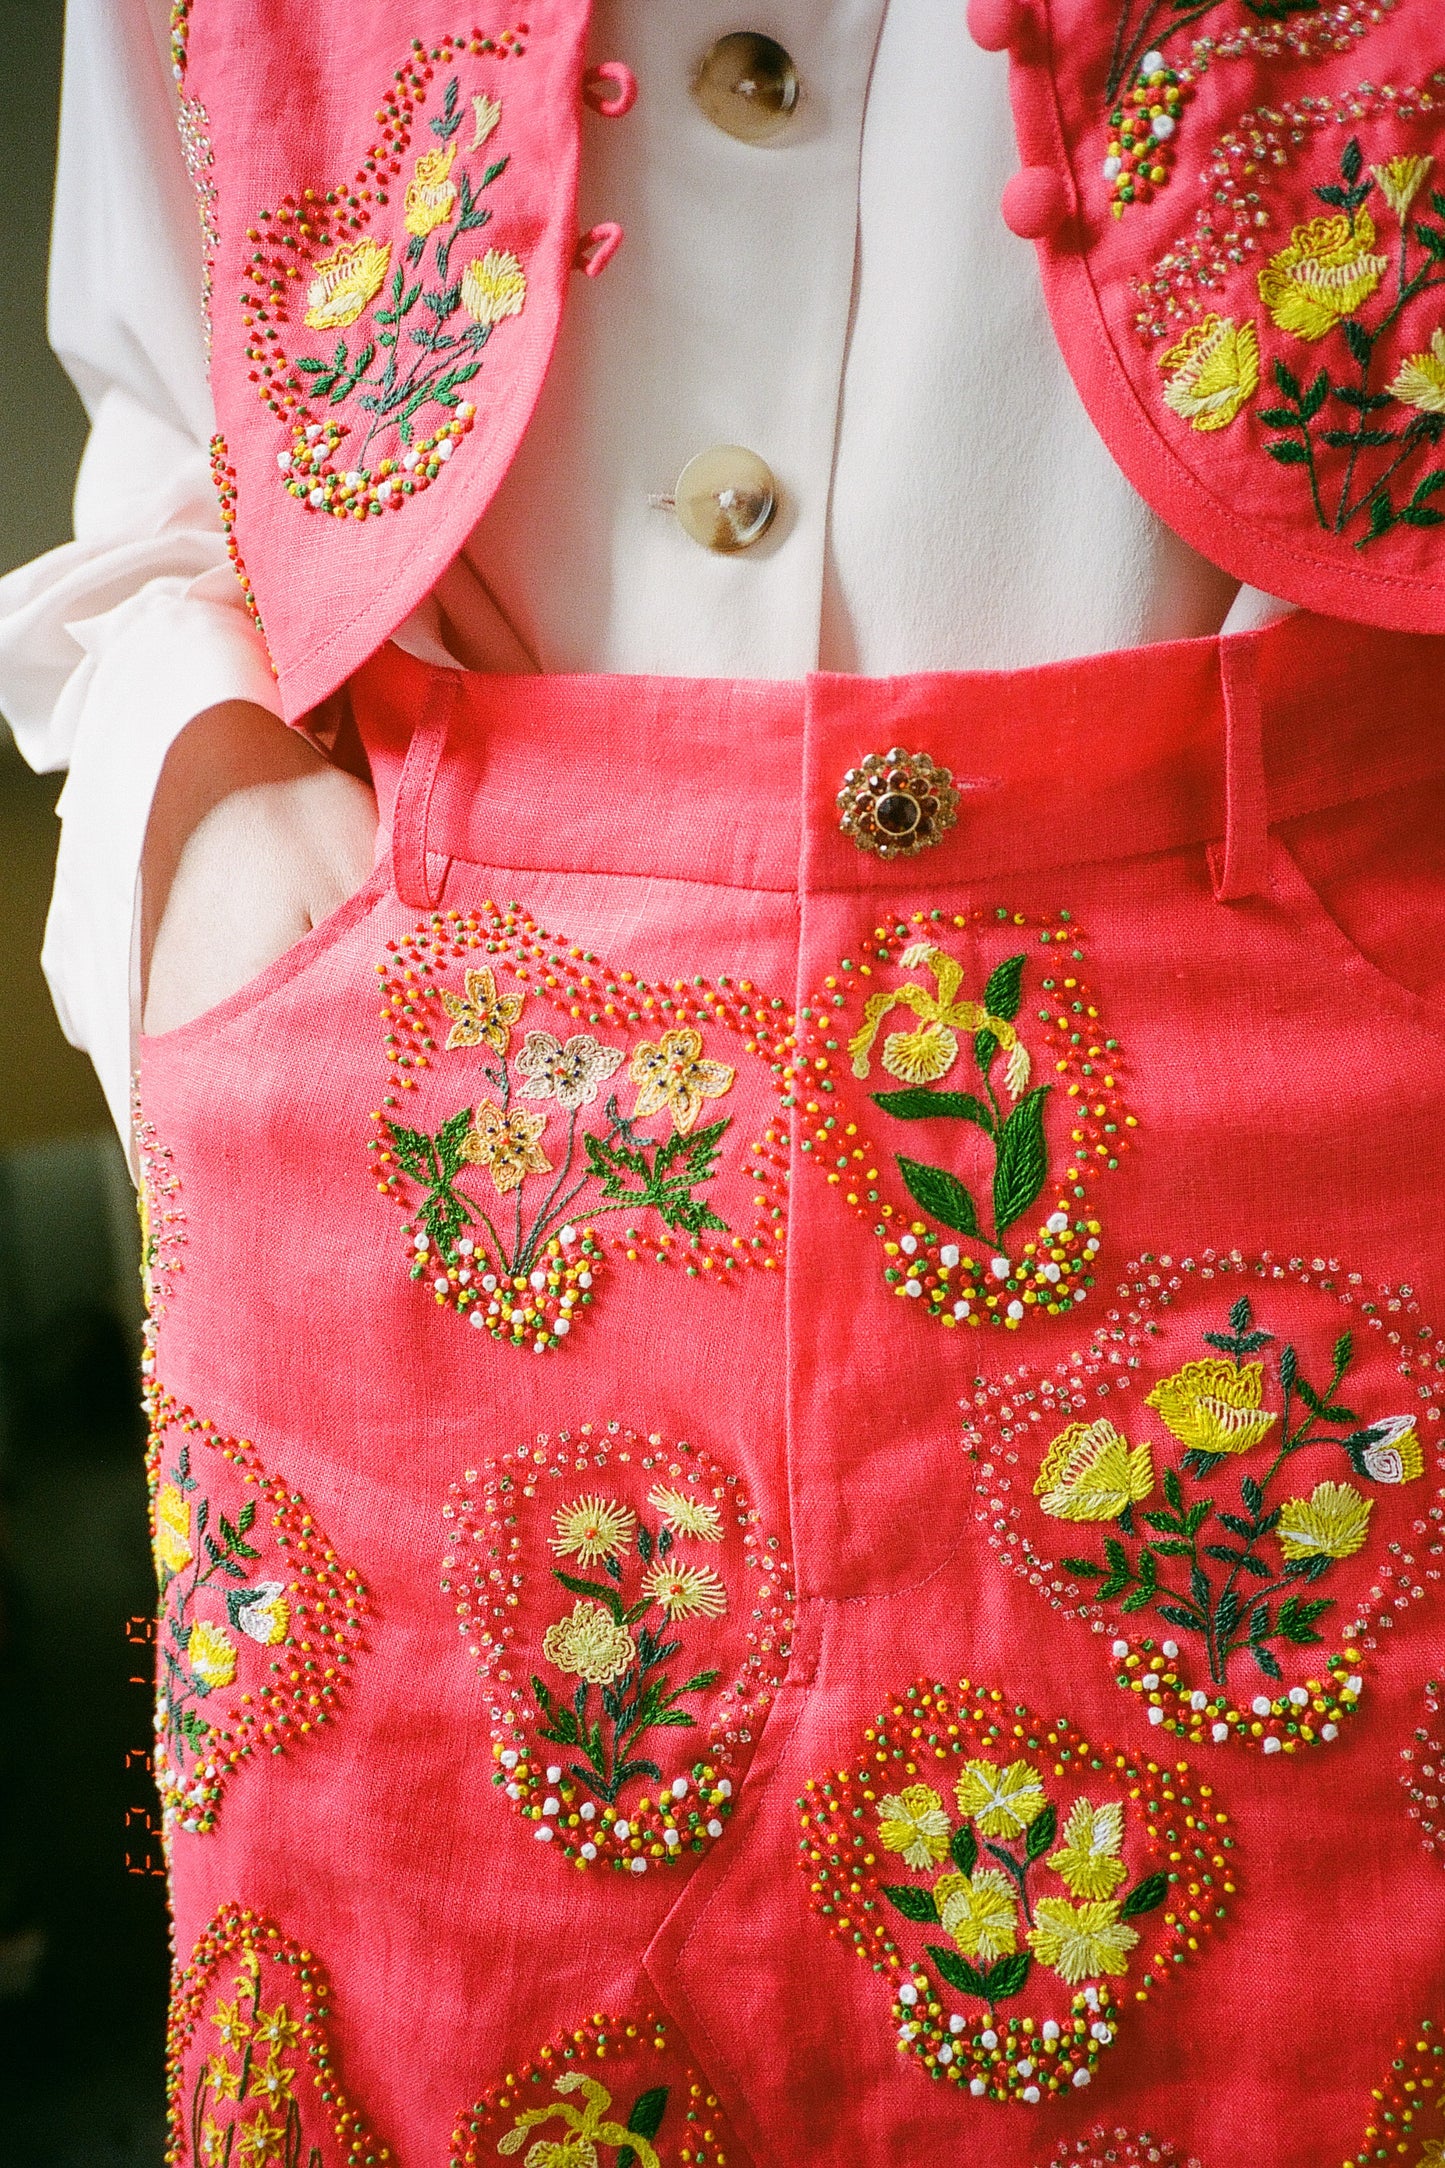 Nunu Skirt - Hand Embroidered Flowers